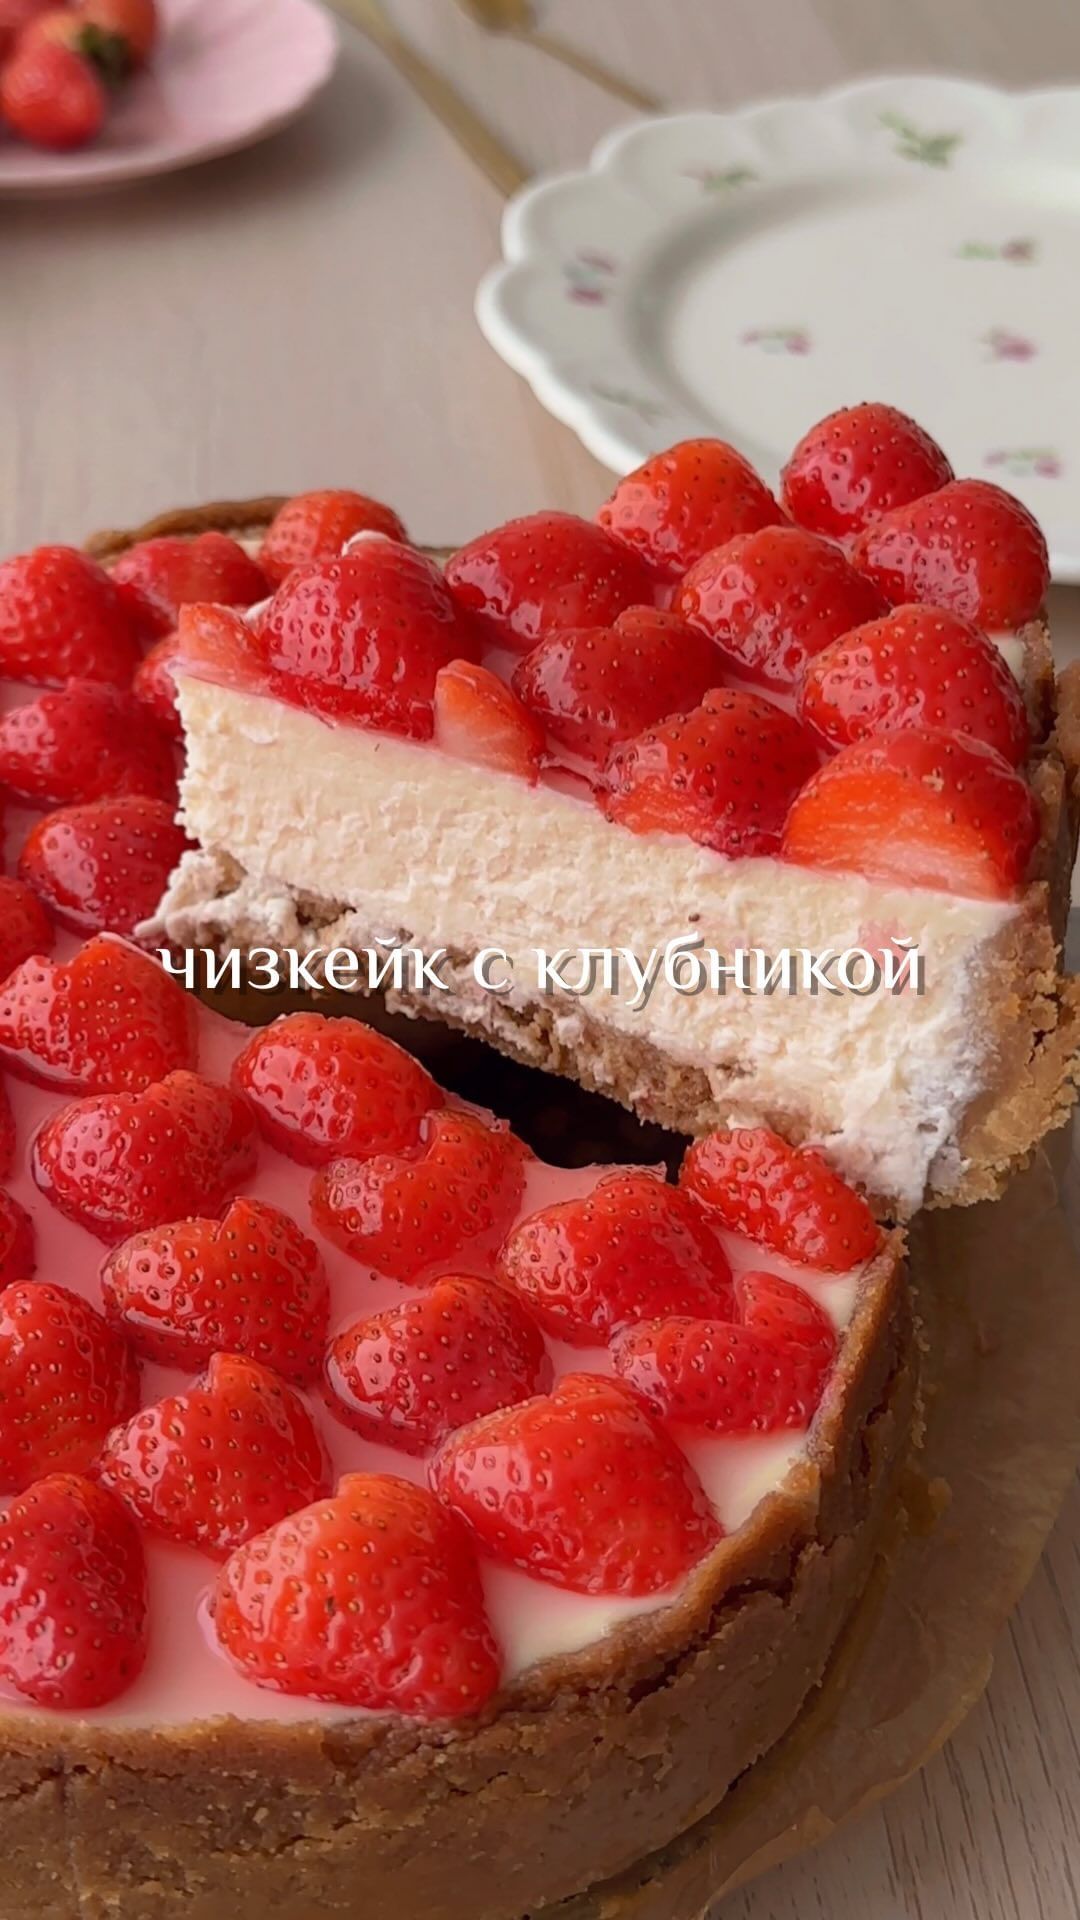 Strawberry Cheesecake 🍓💫